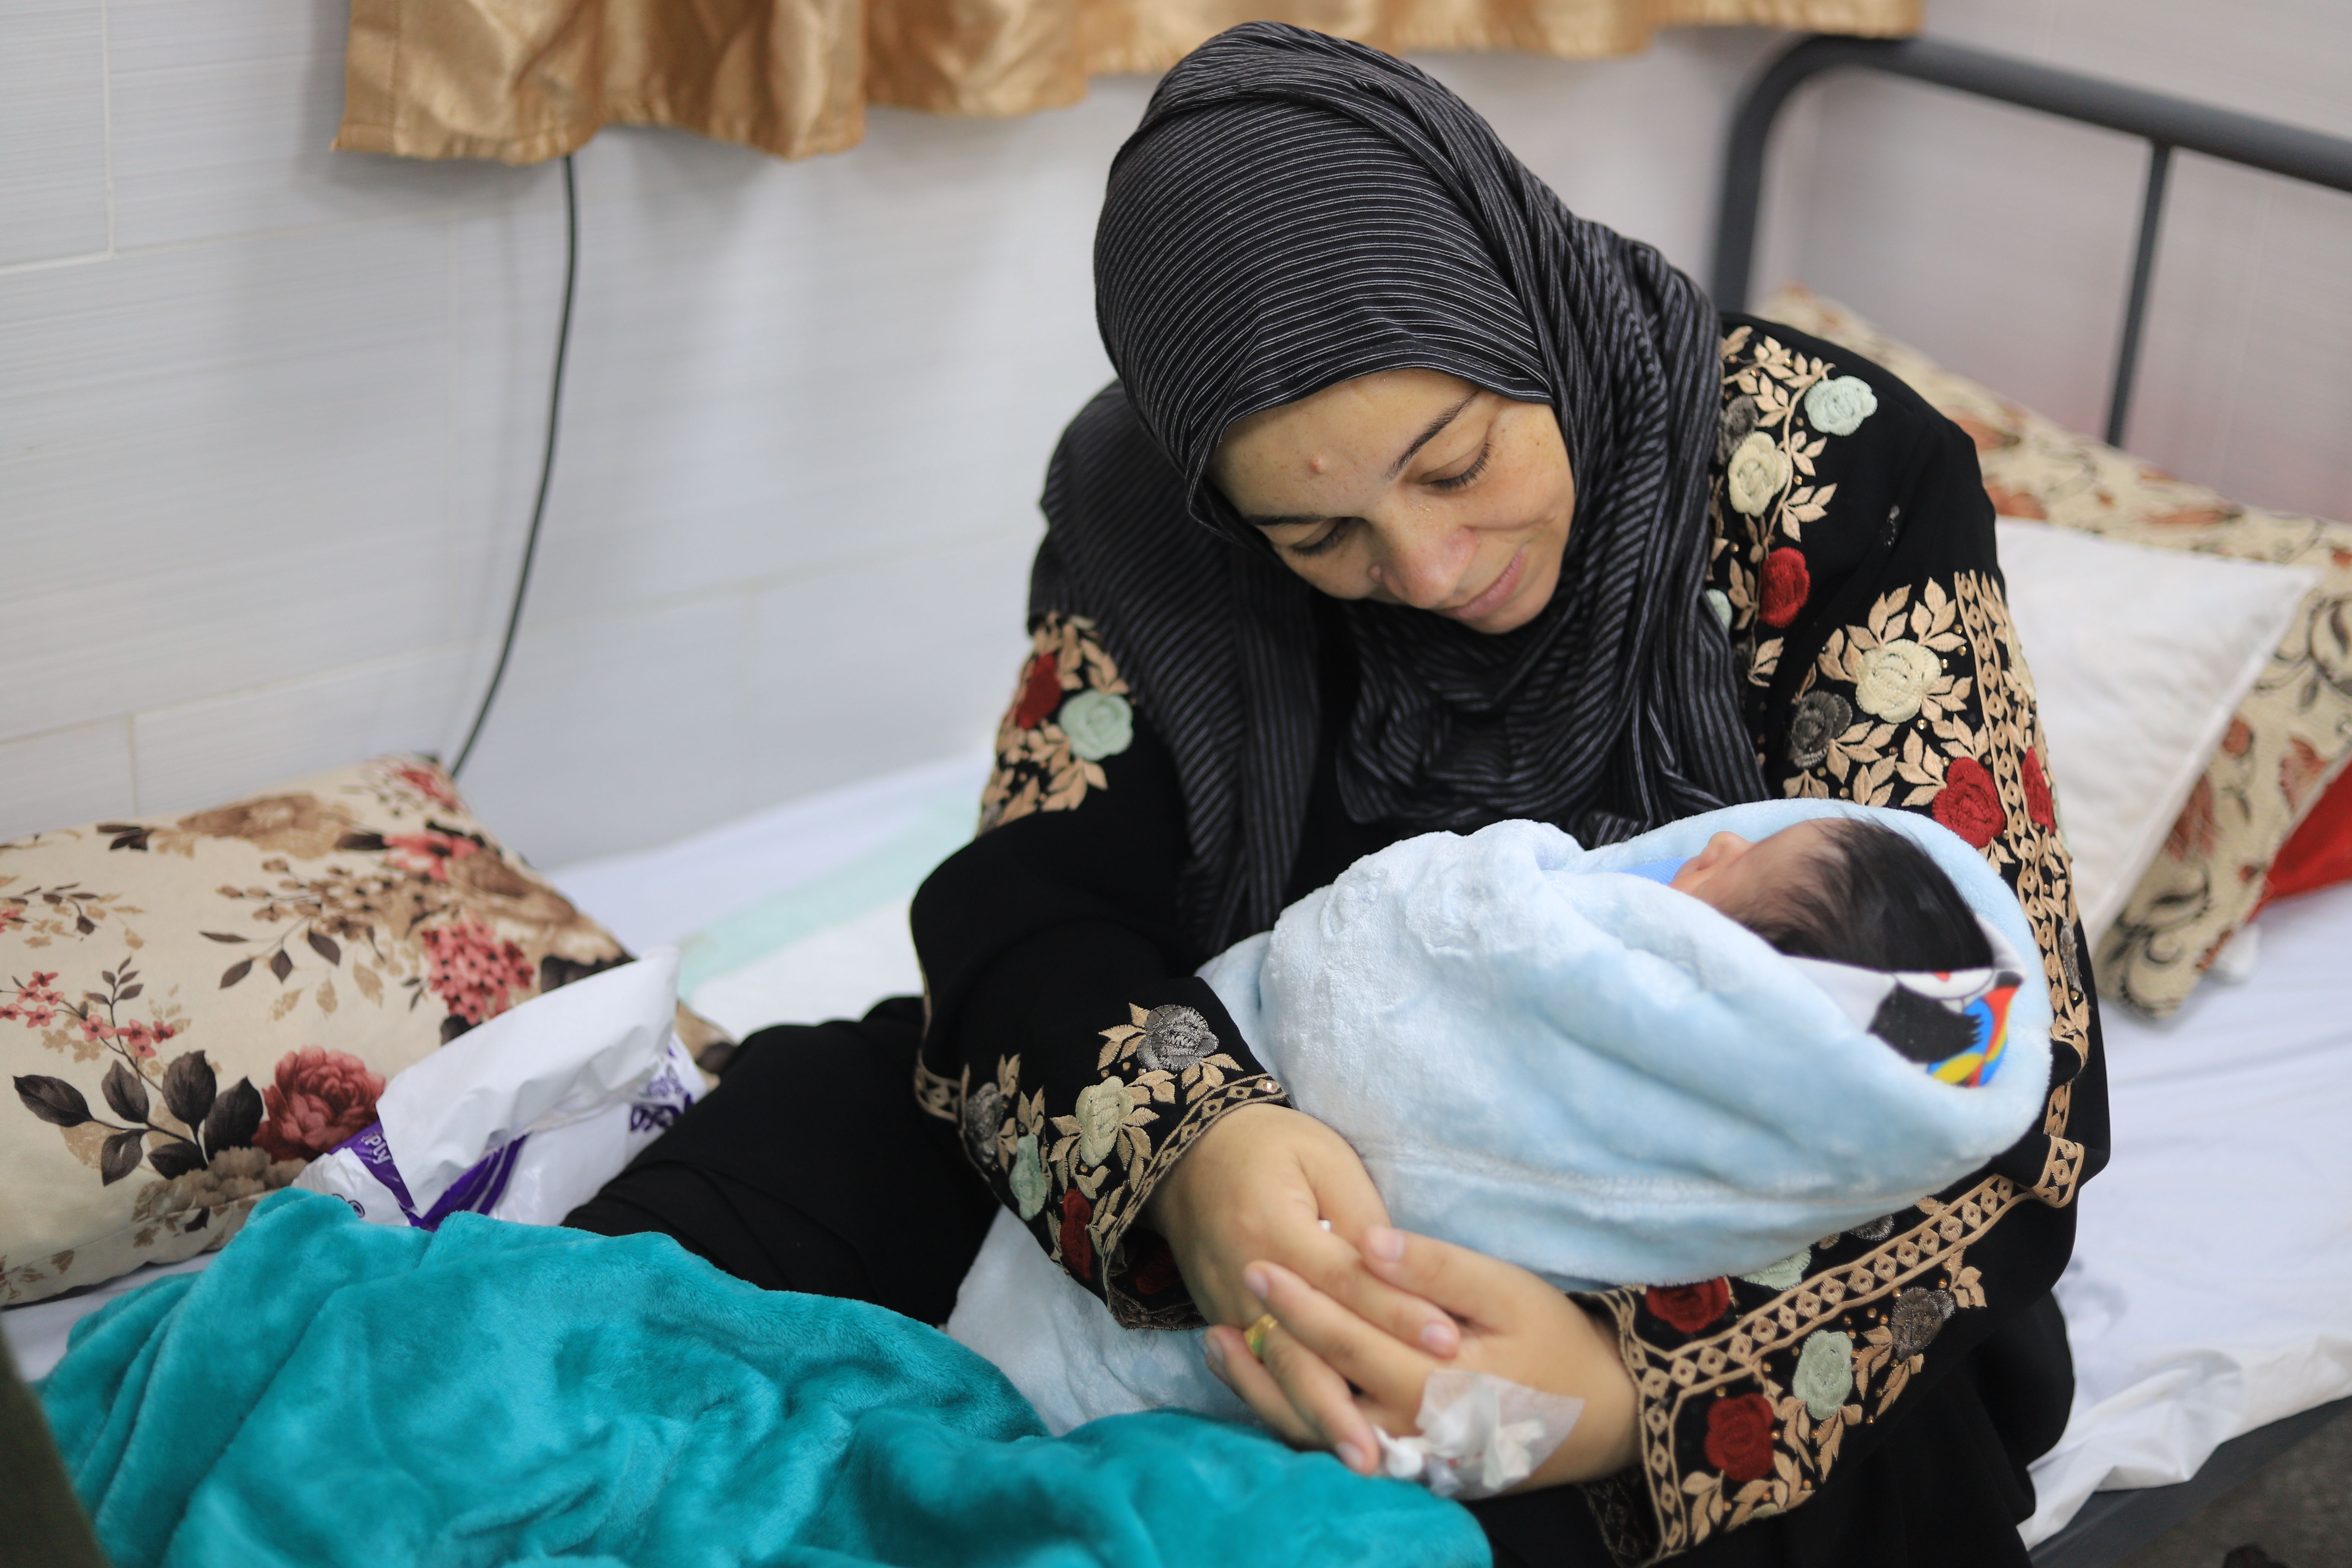 Mariam Asalia sostiene a su hijo recién nacido en el hospital materno Emirati de Rafah, la principal maternidad del sur de Gaza y centro de referencia en salud materna para más de 1,5 millones de desplazados. © Mariam Abu Dagga/MSF